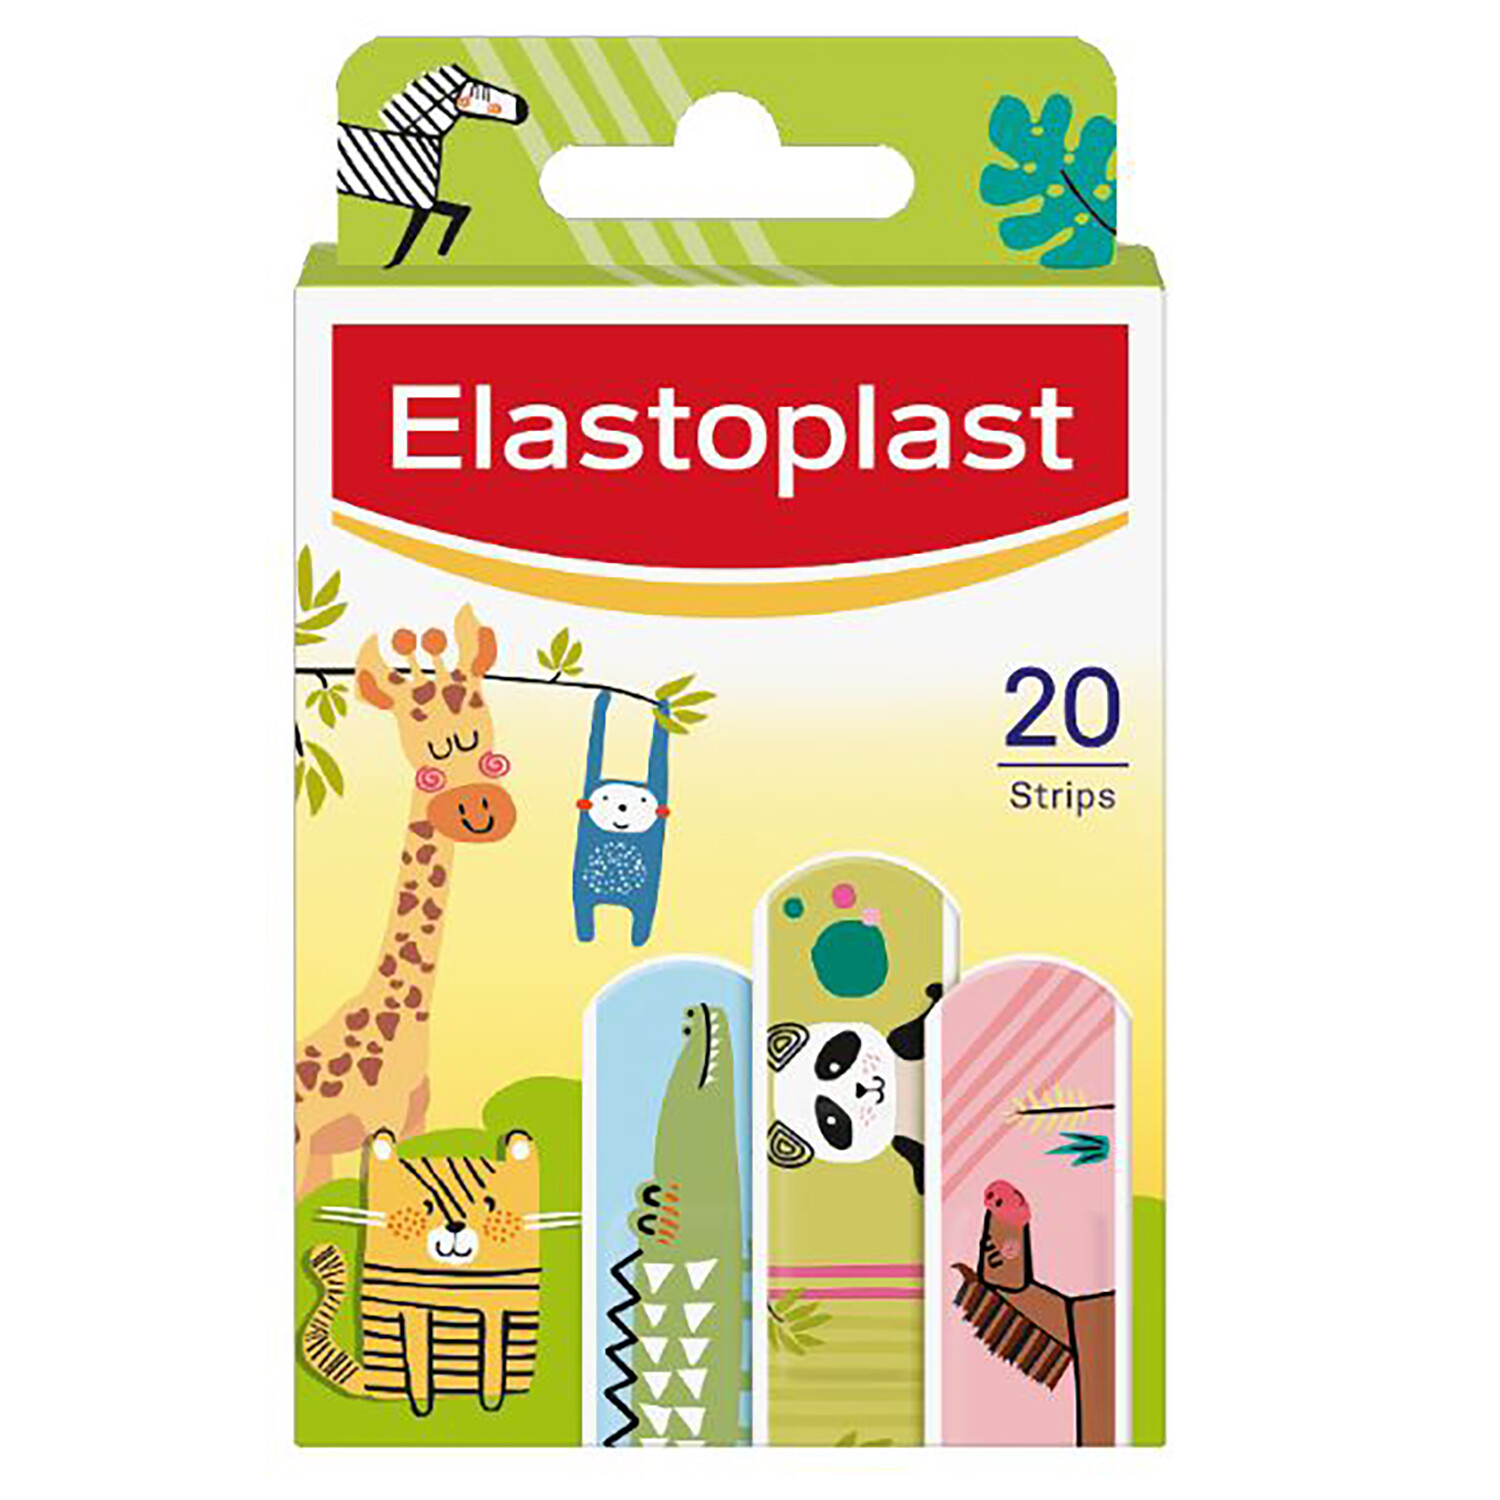 Elastoplast Kids Animal Plasters Image